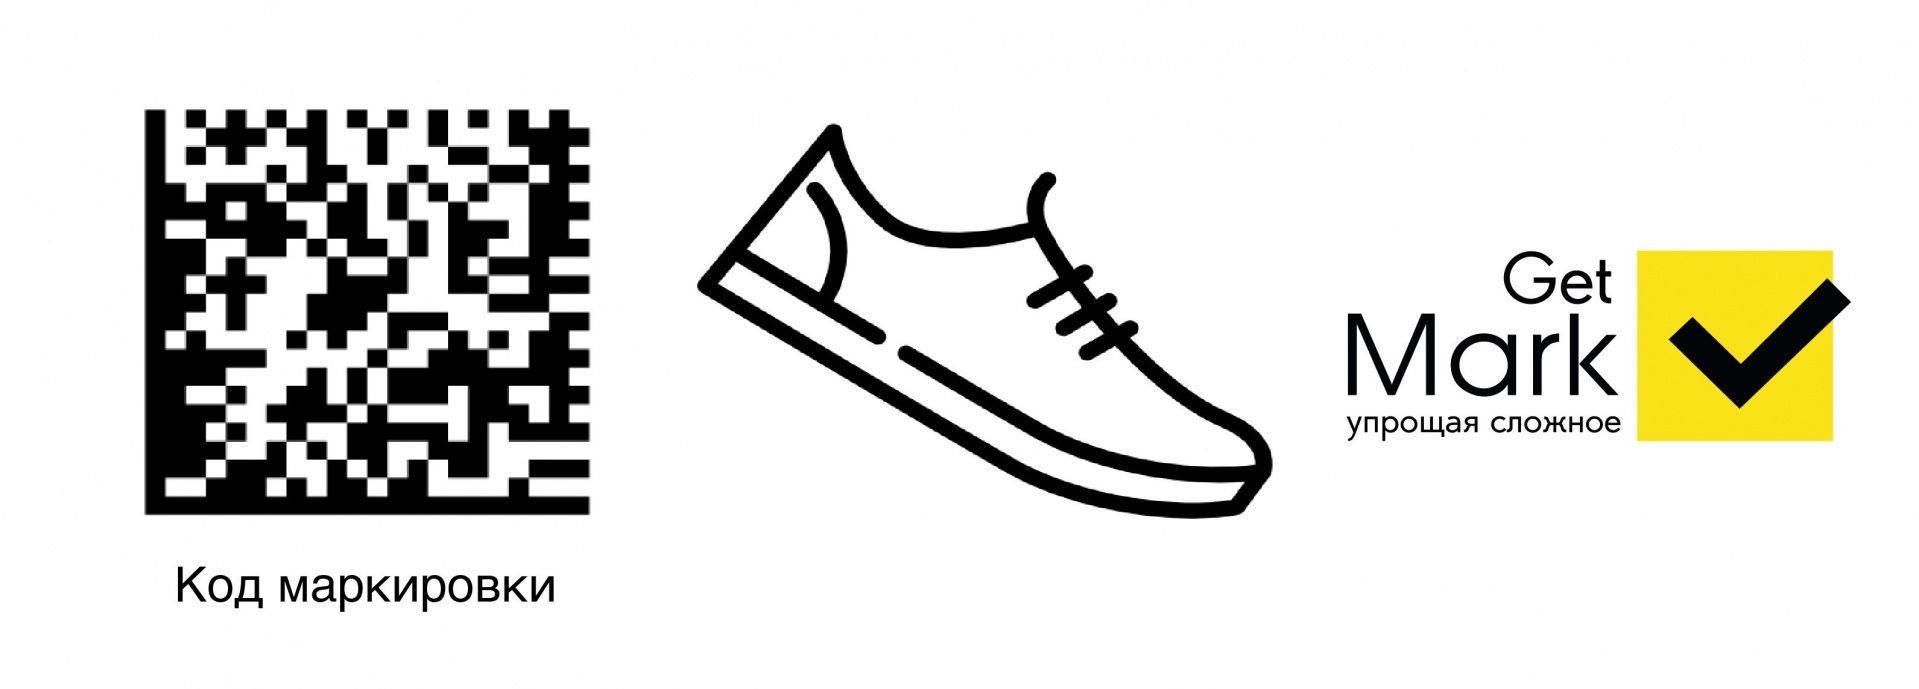 Продление сроков маркировки остатков обуви